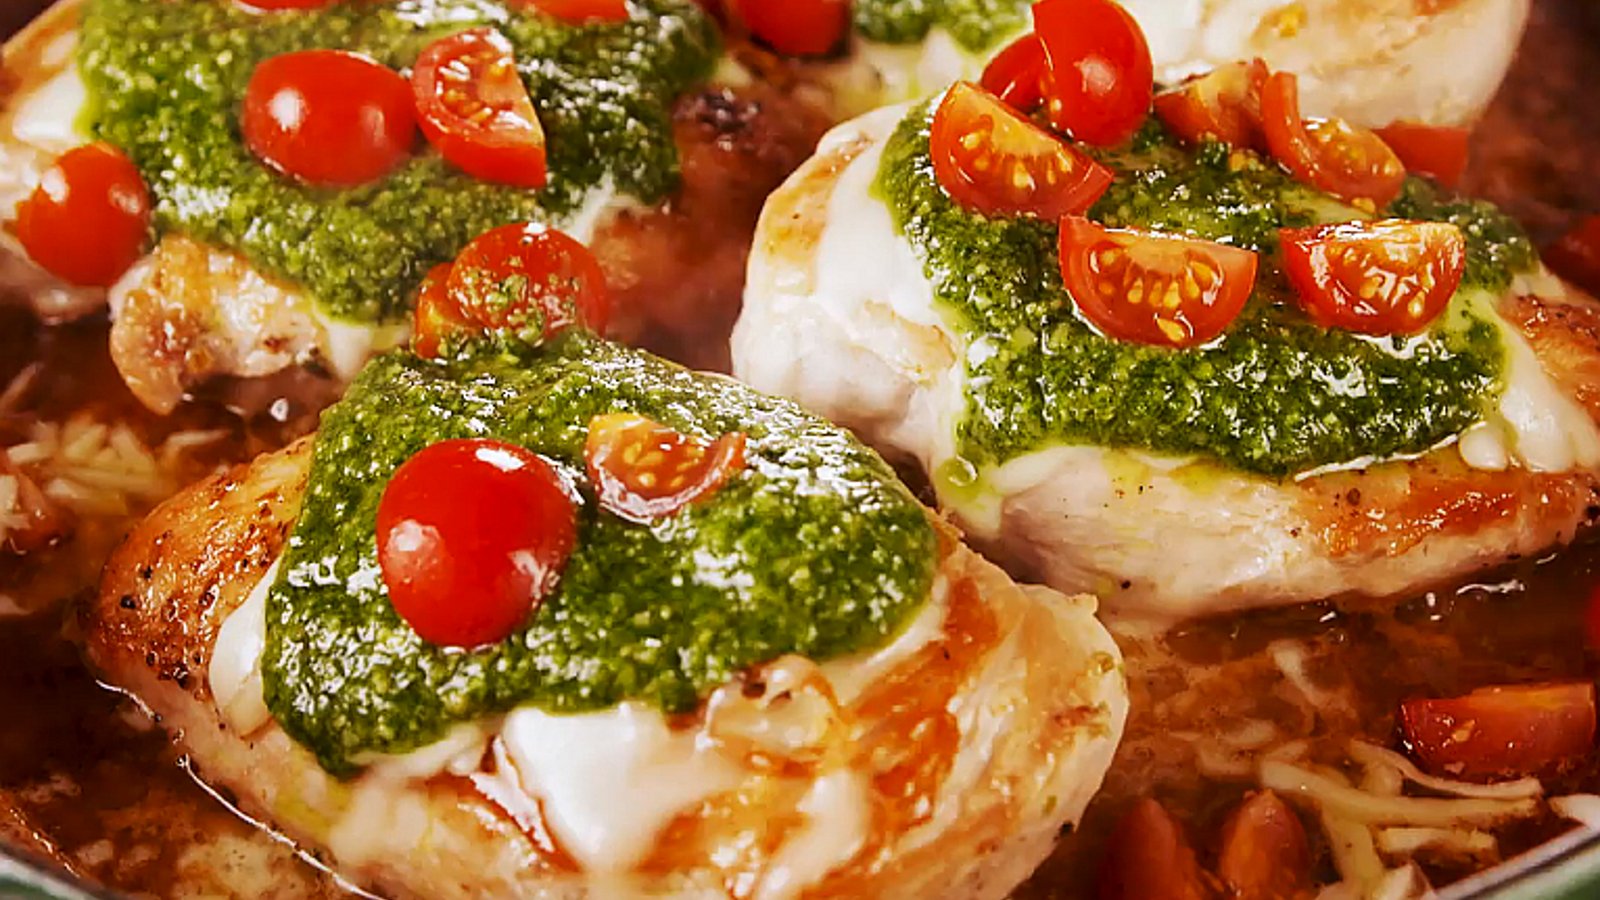 Poulet margherita inspiré de la cuisine traditionnelle italienne